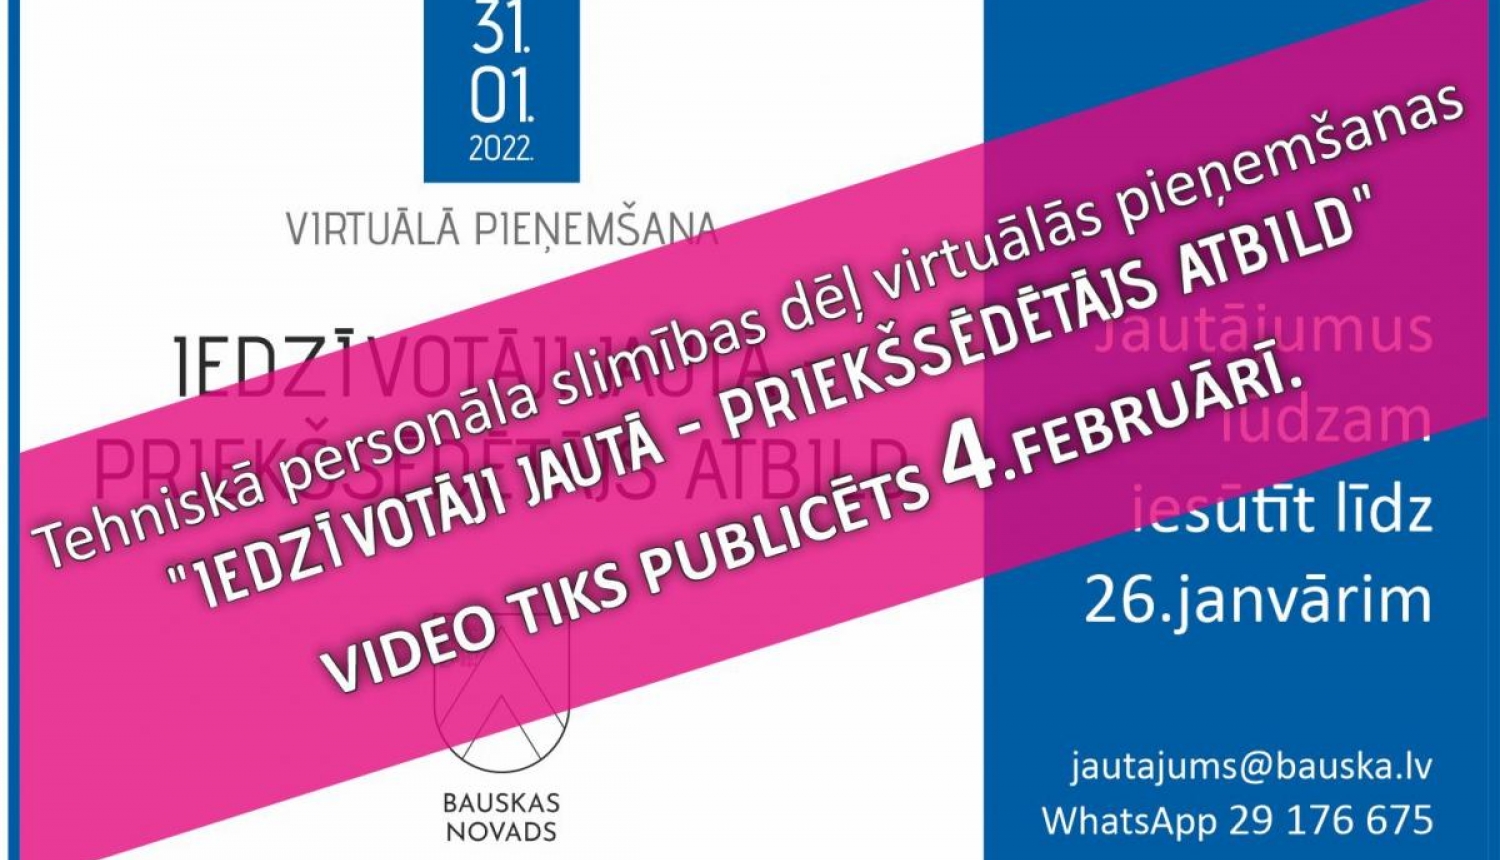 Virtuālās pieņemšanas "Iedzīvotāji jautā - priekšsēdētājs atbild" video publicēsim 4. februārī